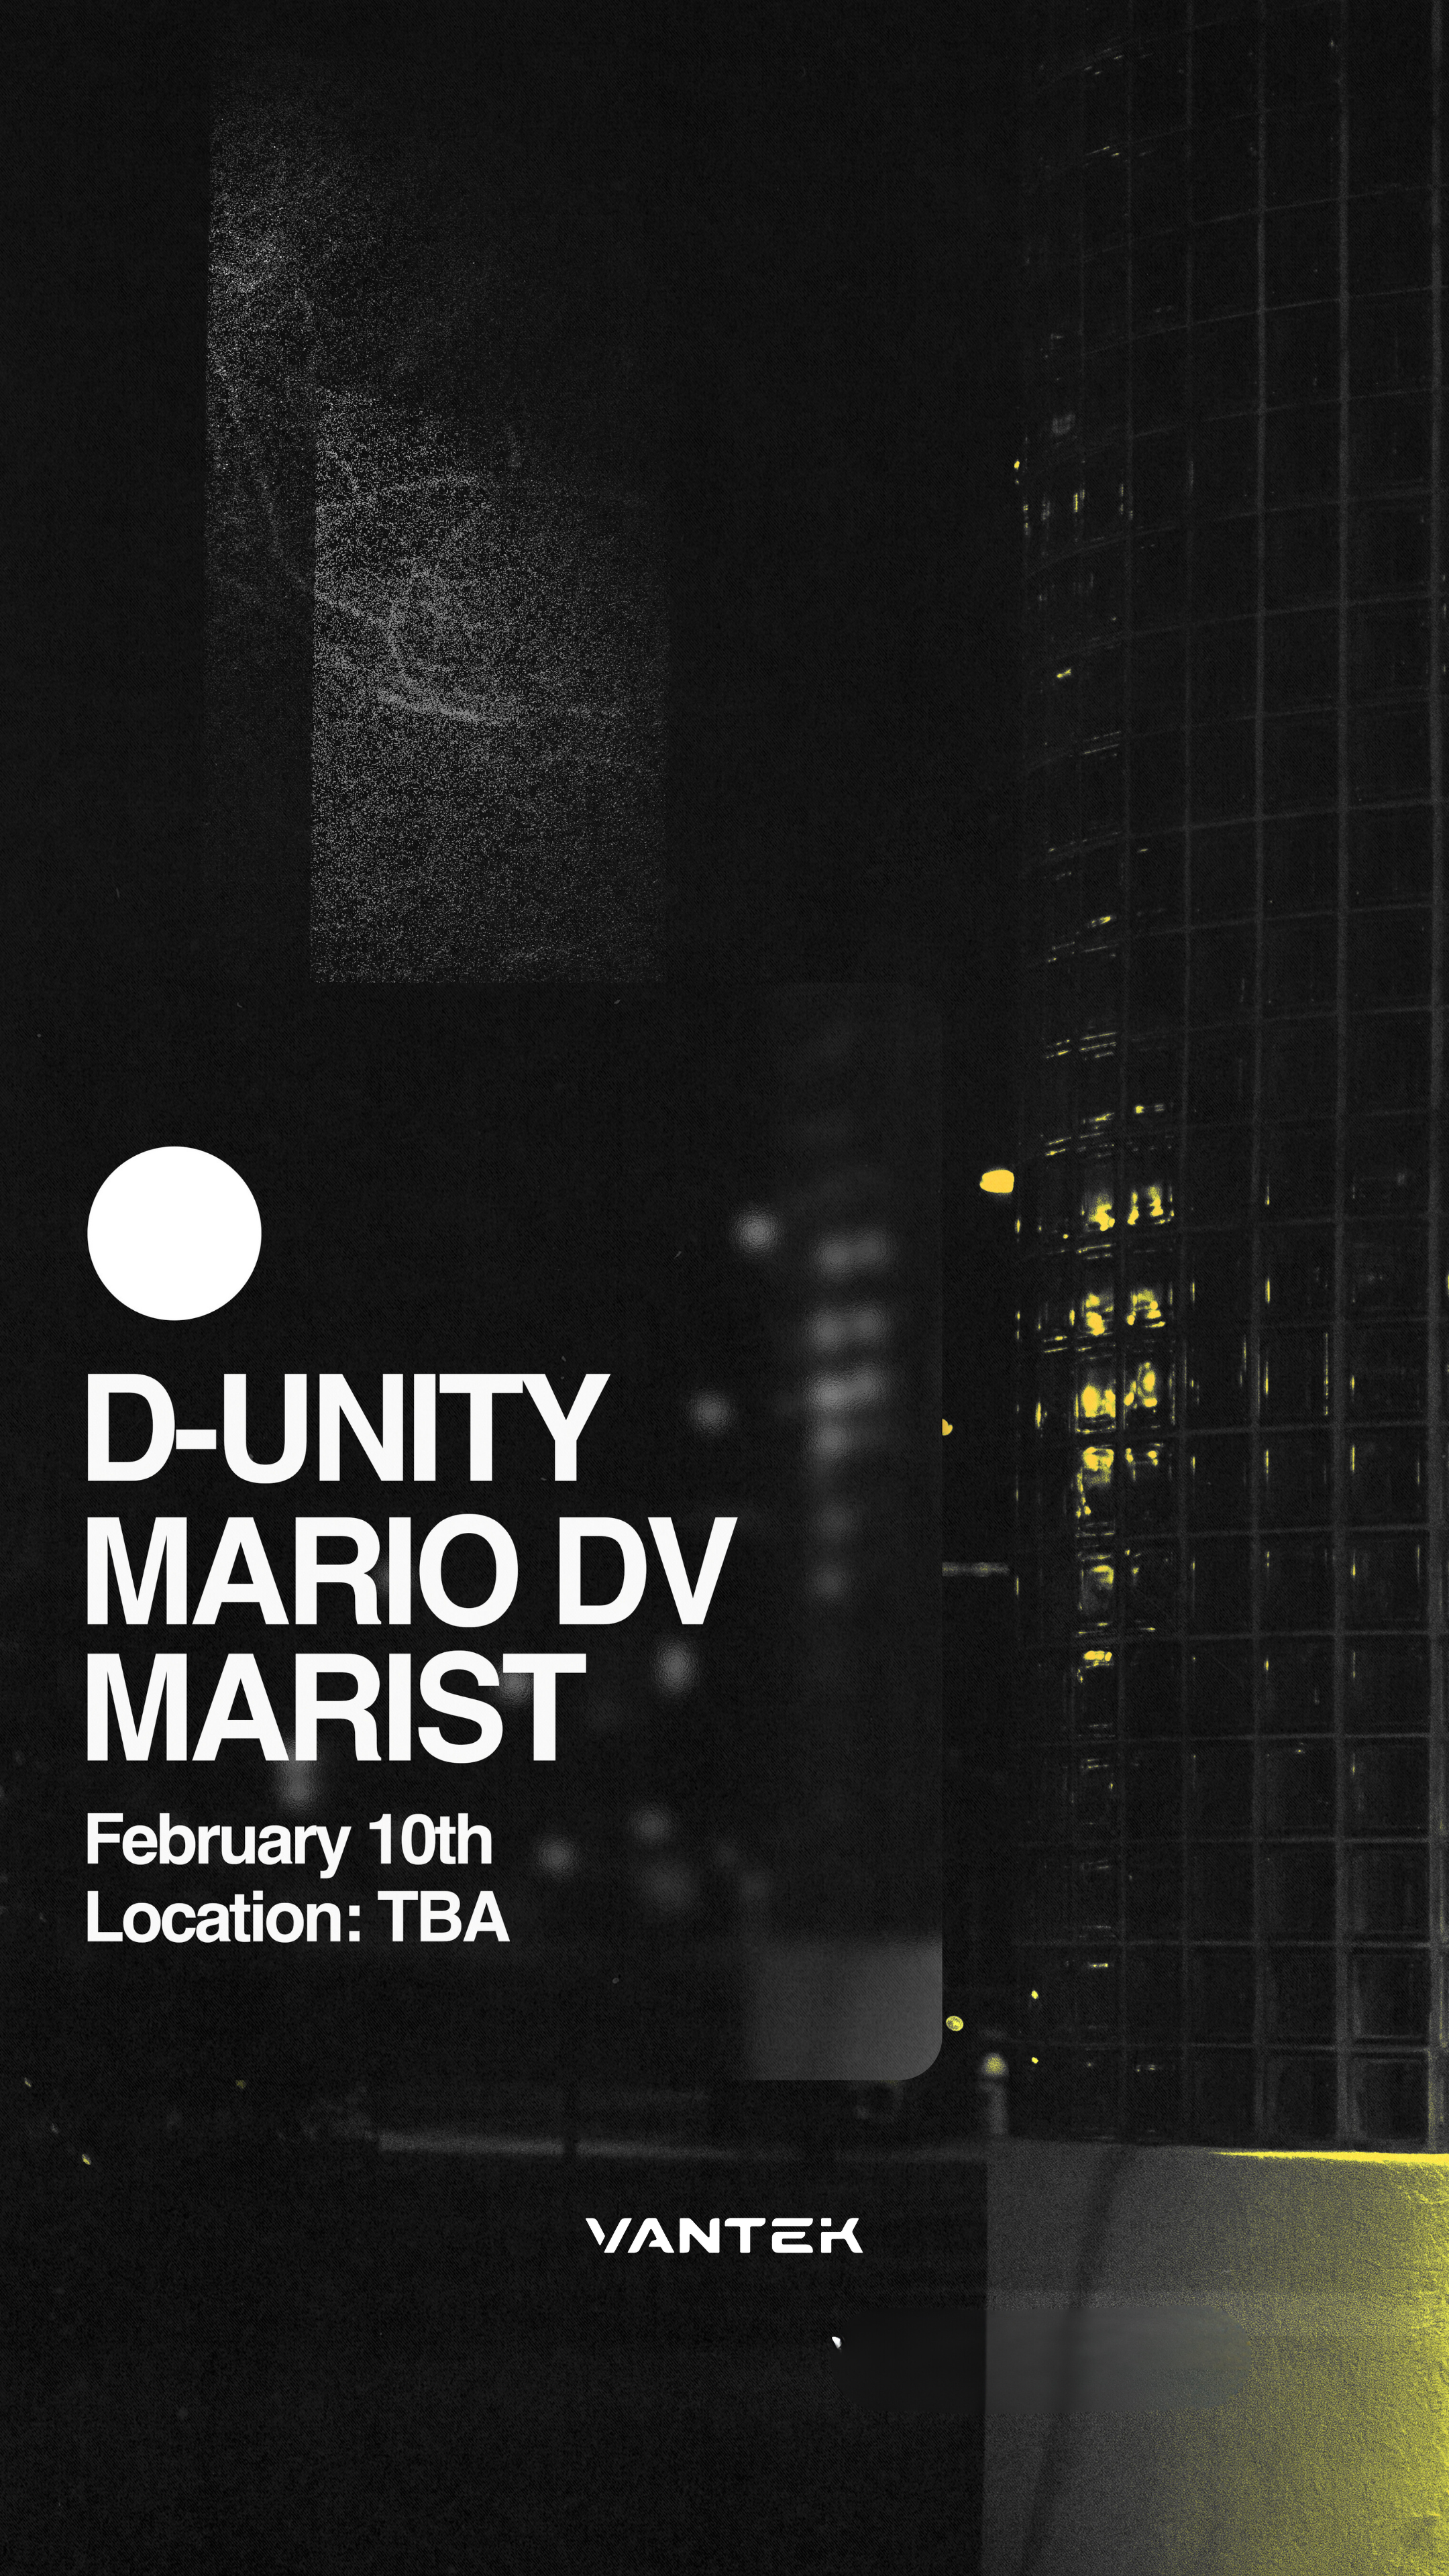 VANTEK PRESENTS: D-Unity, MARIO DV, MARIST - フライヤー表